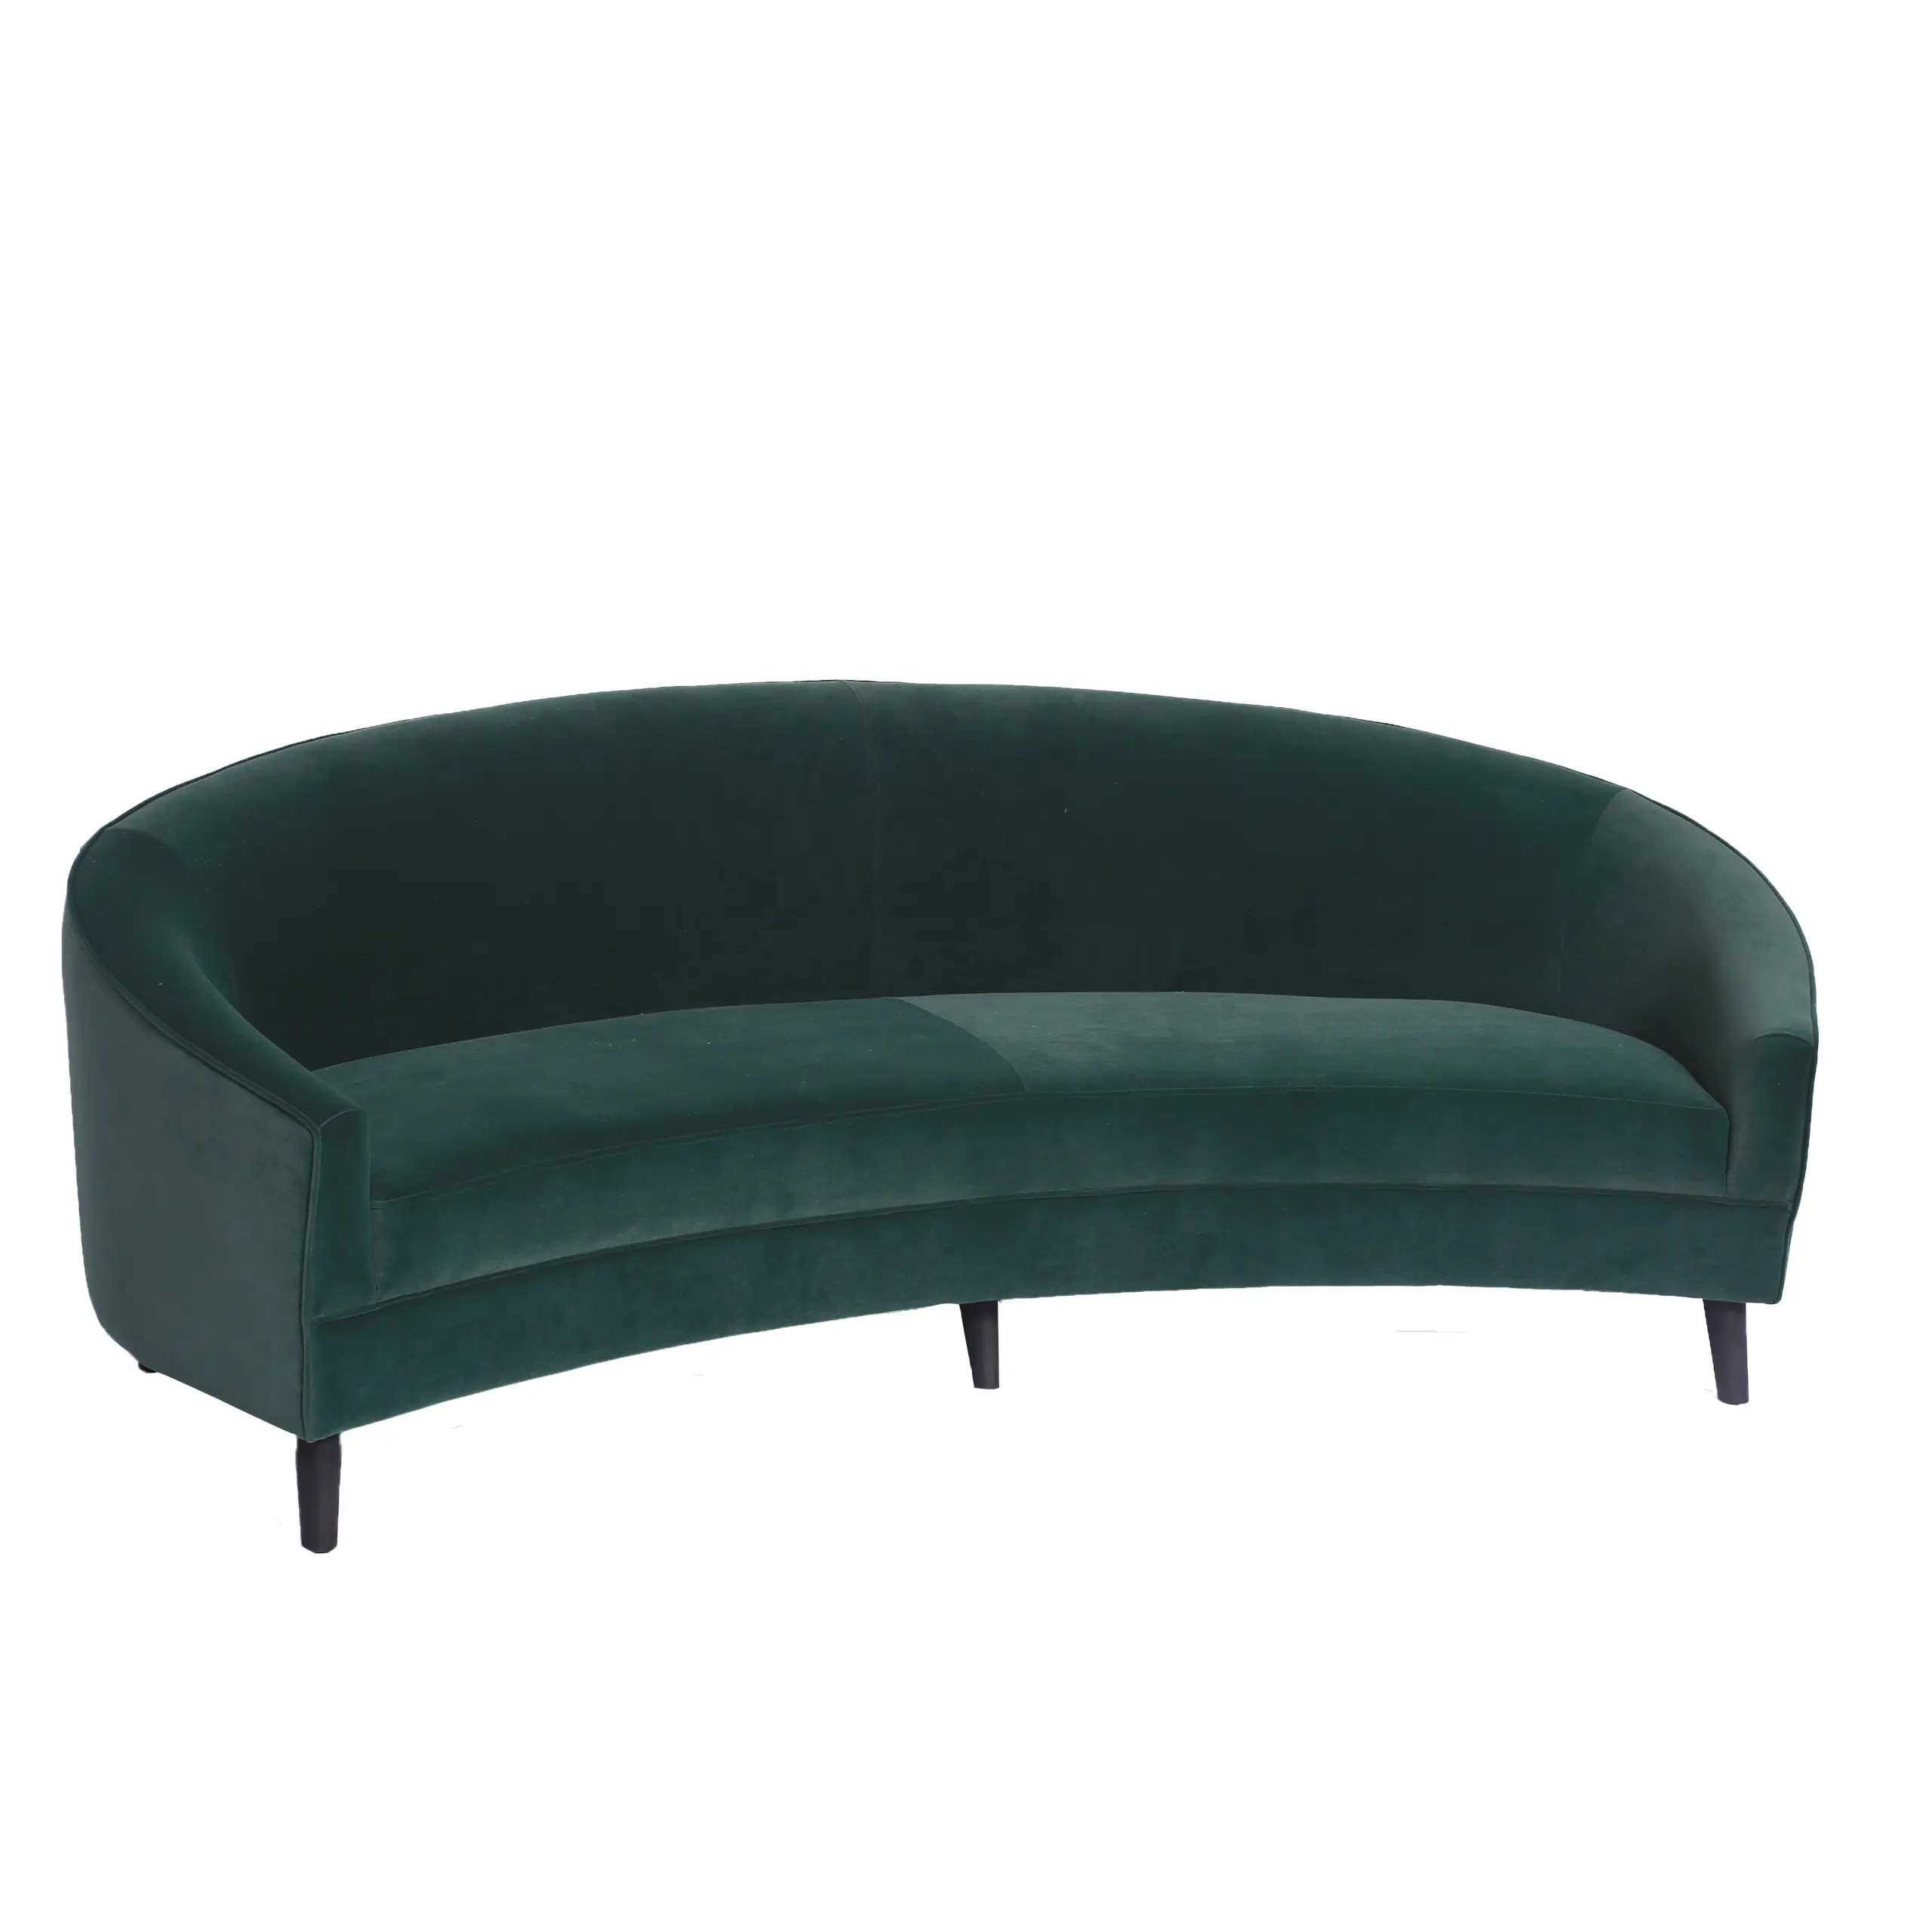 Laynsino living room velvet 3 seater couch luxury green sofas